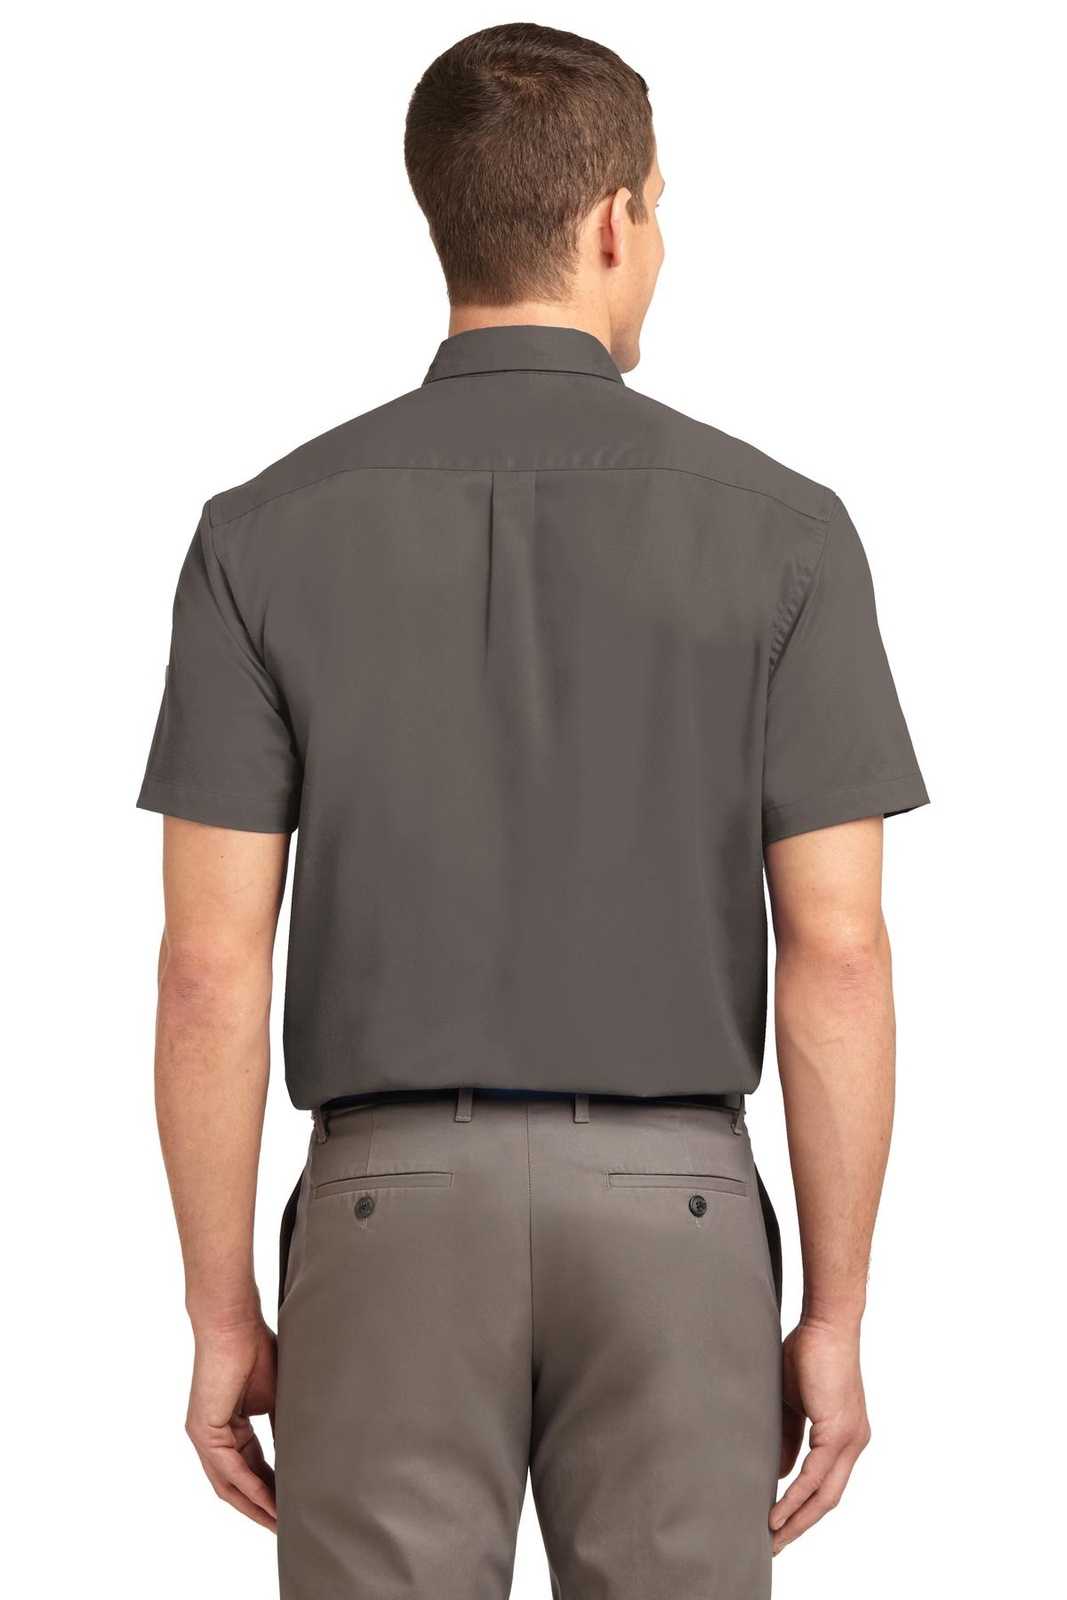 Port Authority S508 Short Sleeve Easy Care Shirt - Bark - HIT a Double - 2